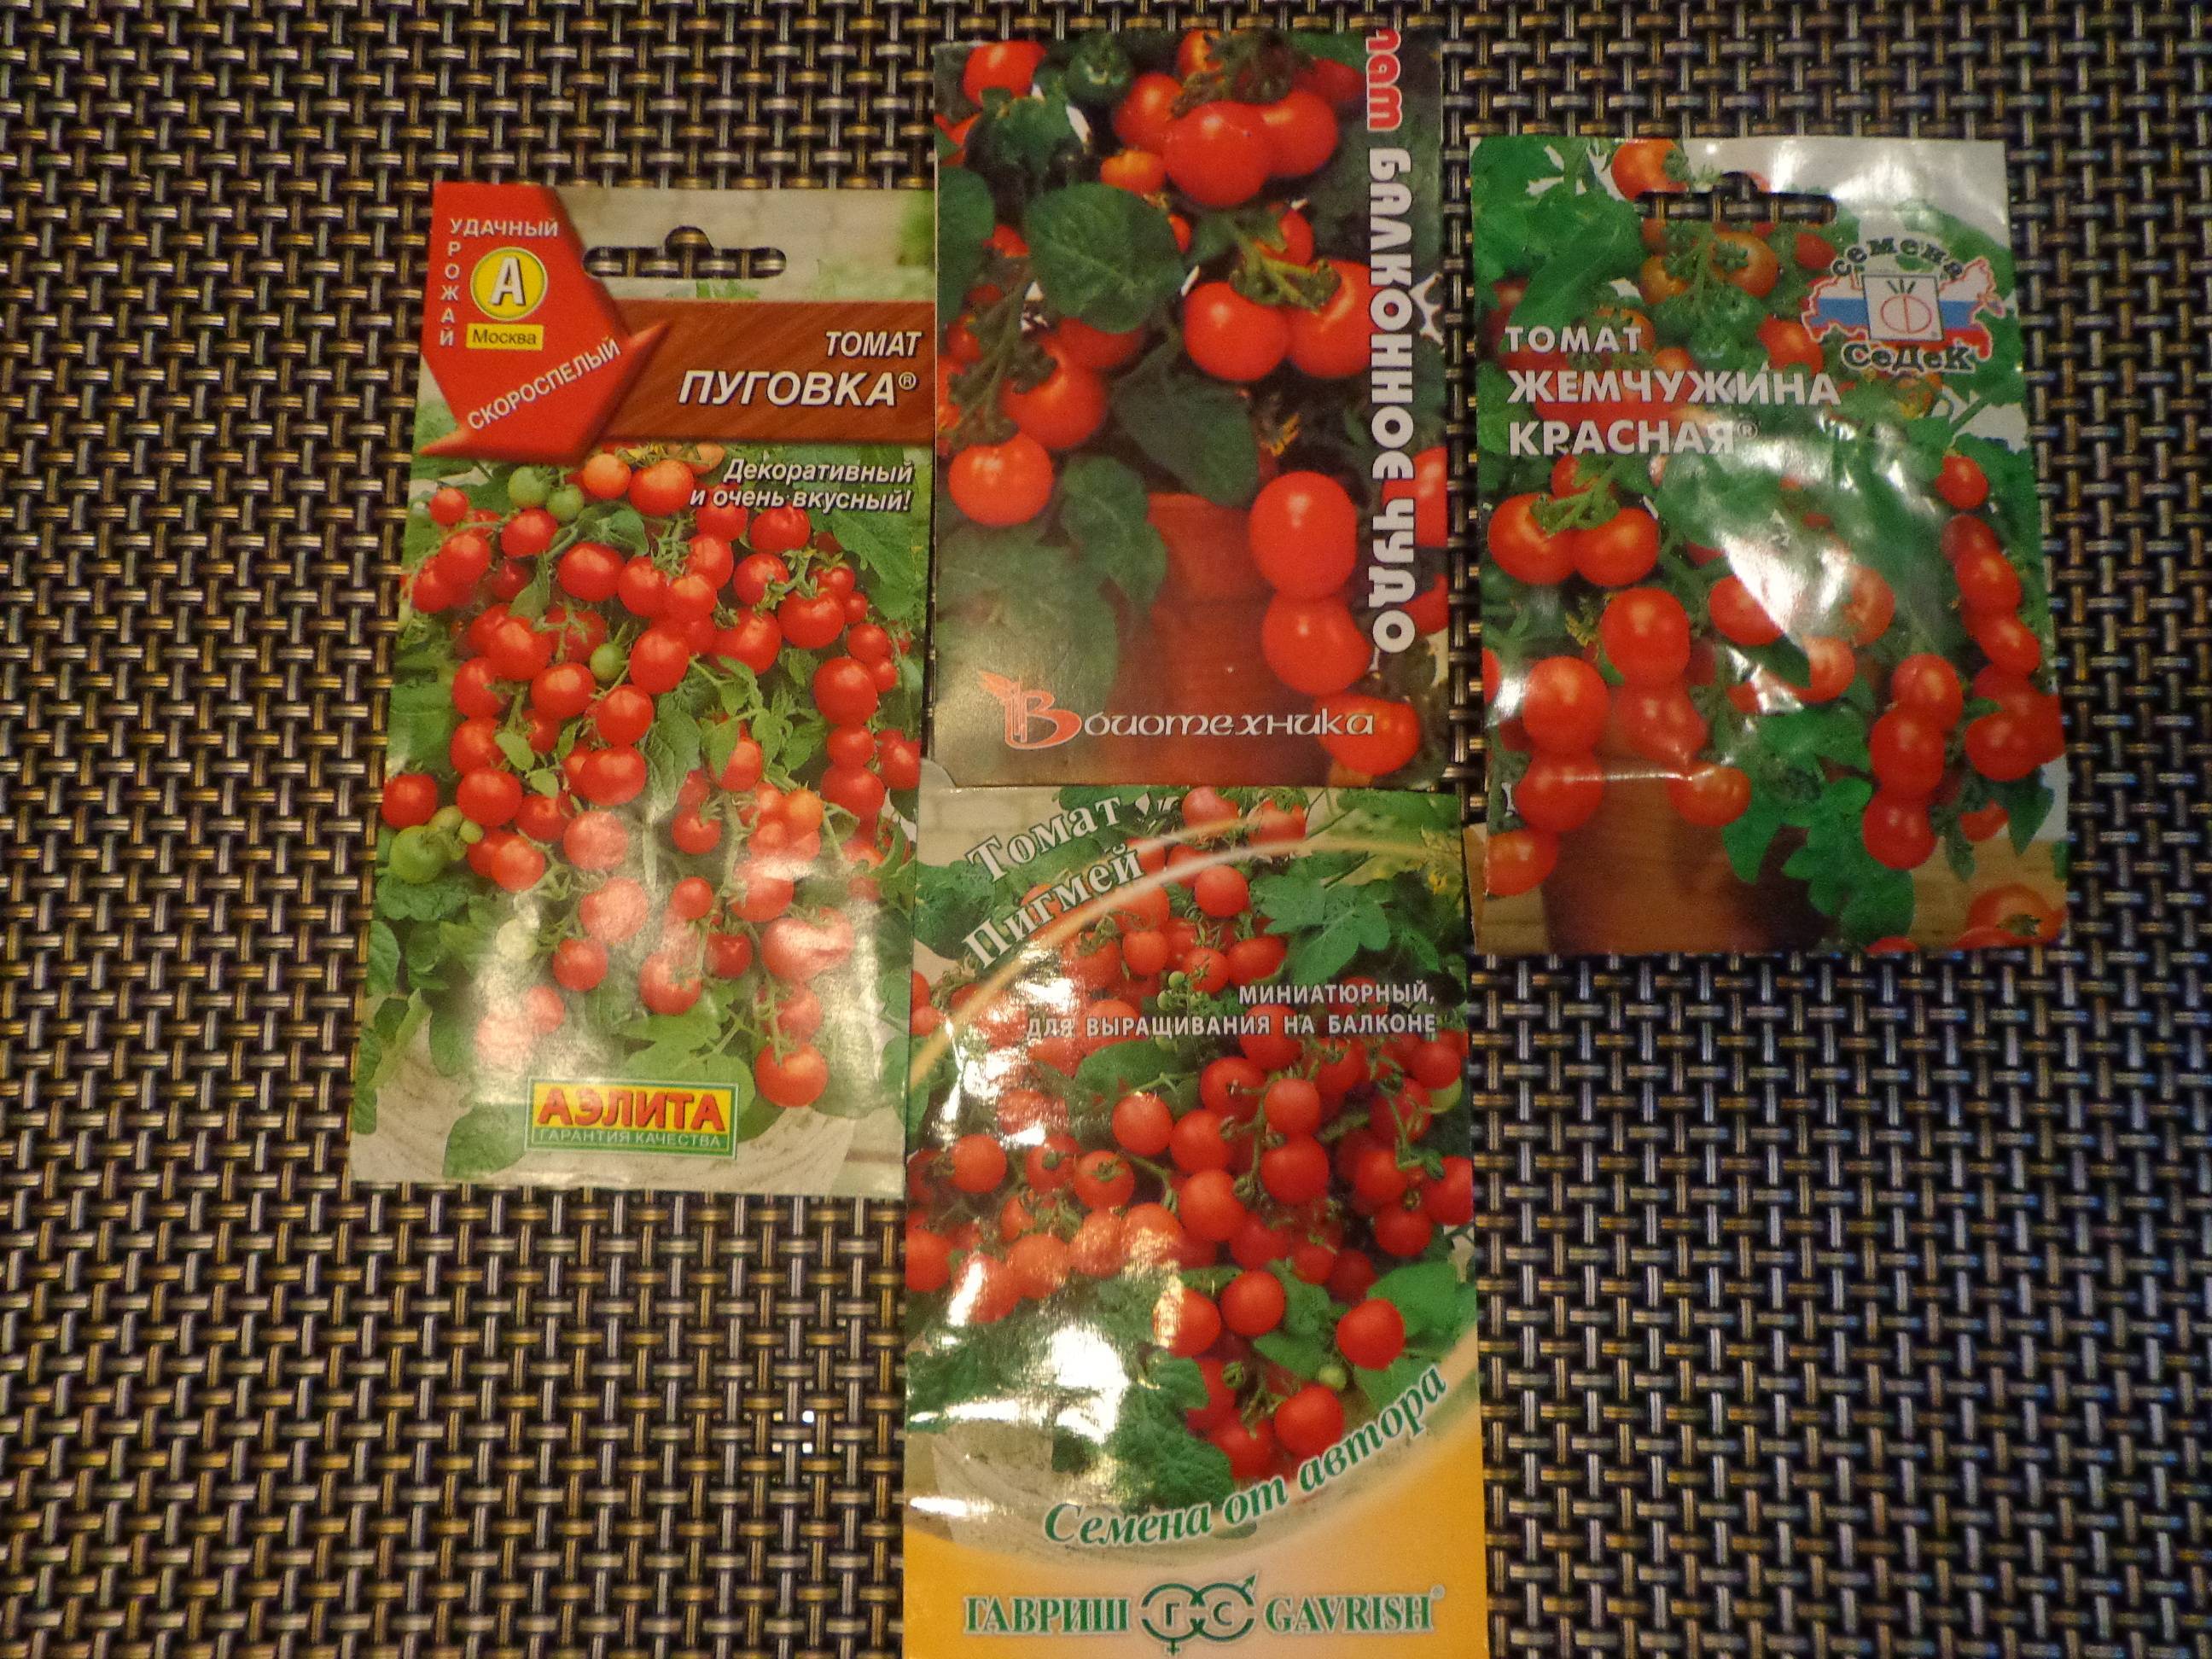 ᐉ пуговка помидоры как выращивать в какой горшочек посадить - ogorod-u-doma.ru